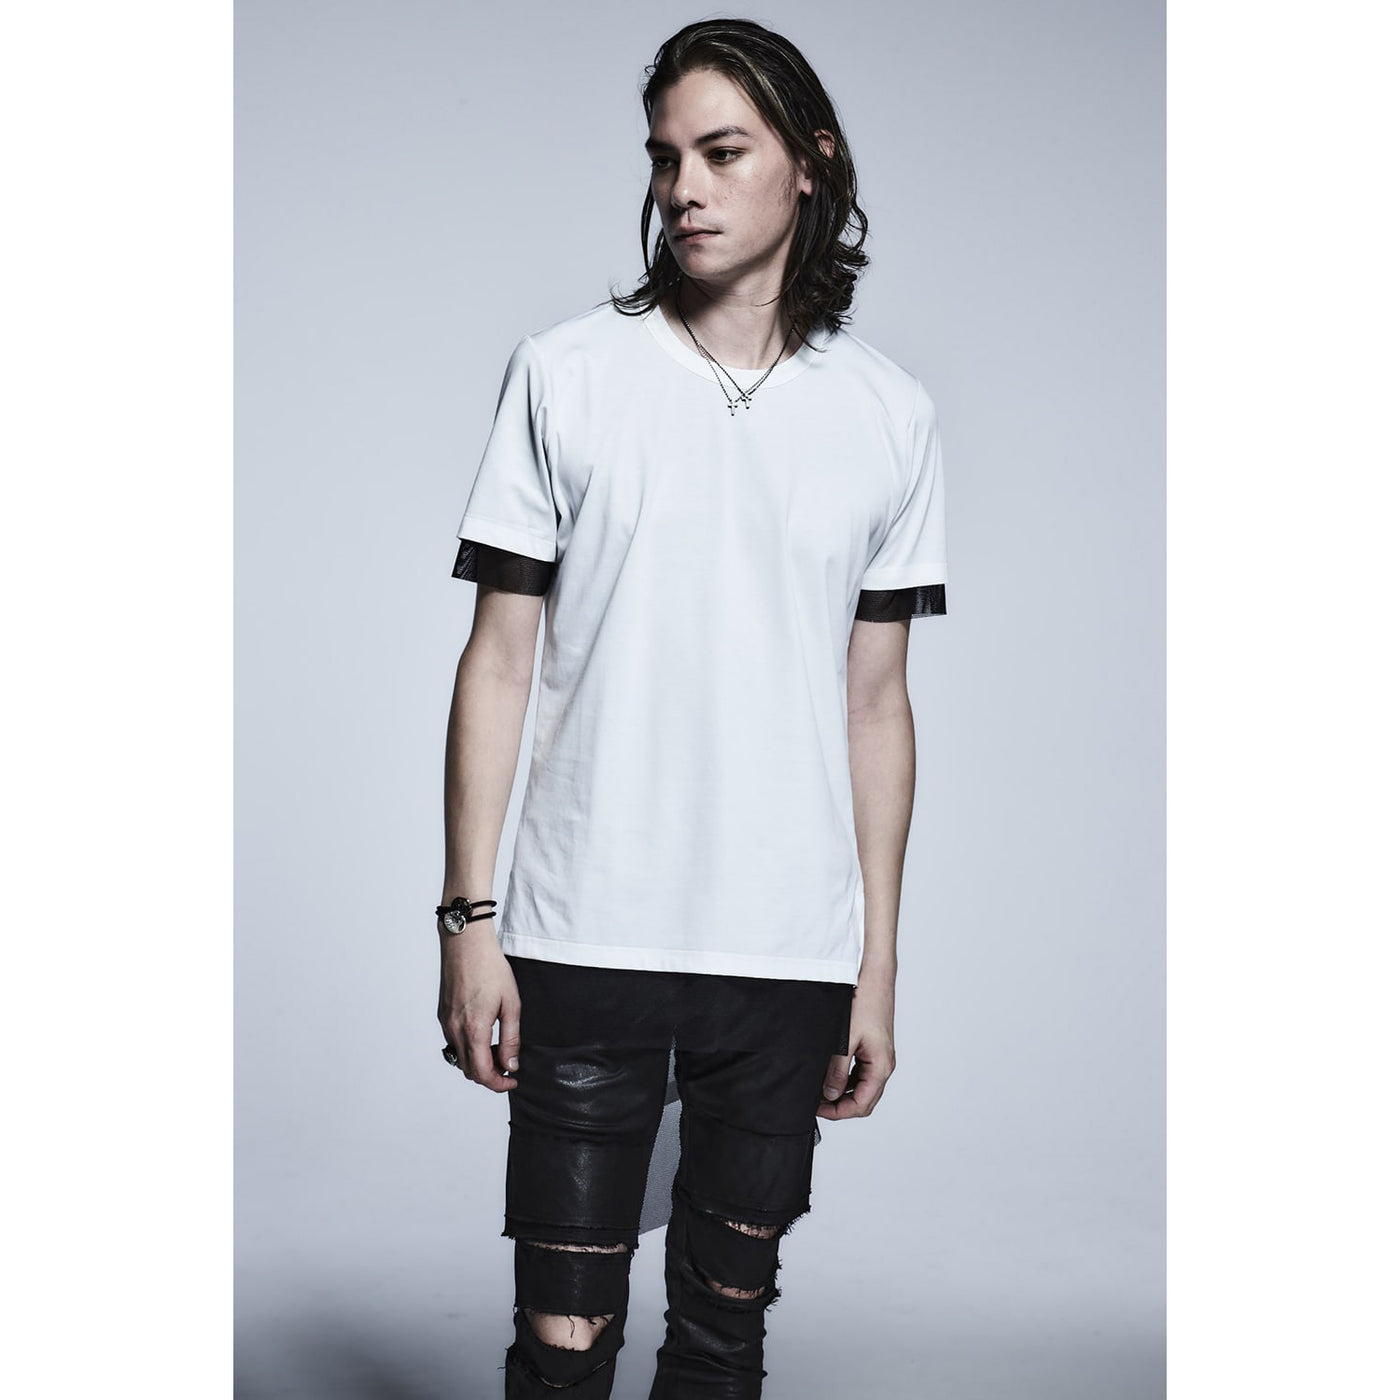 Layered Asymme T-Shirts / WHITE X BLACK